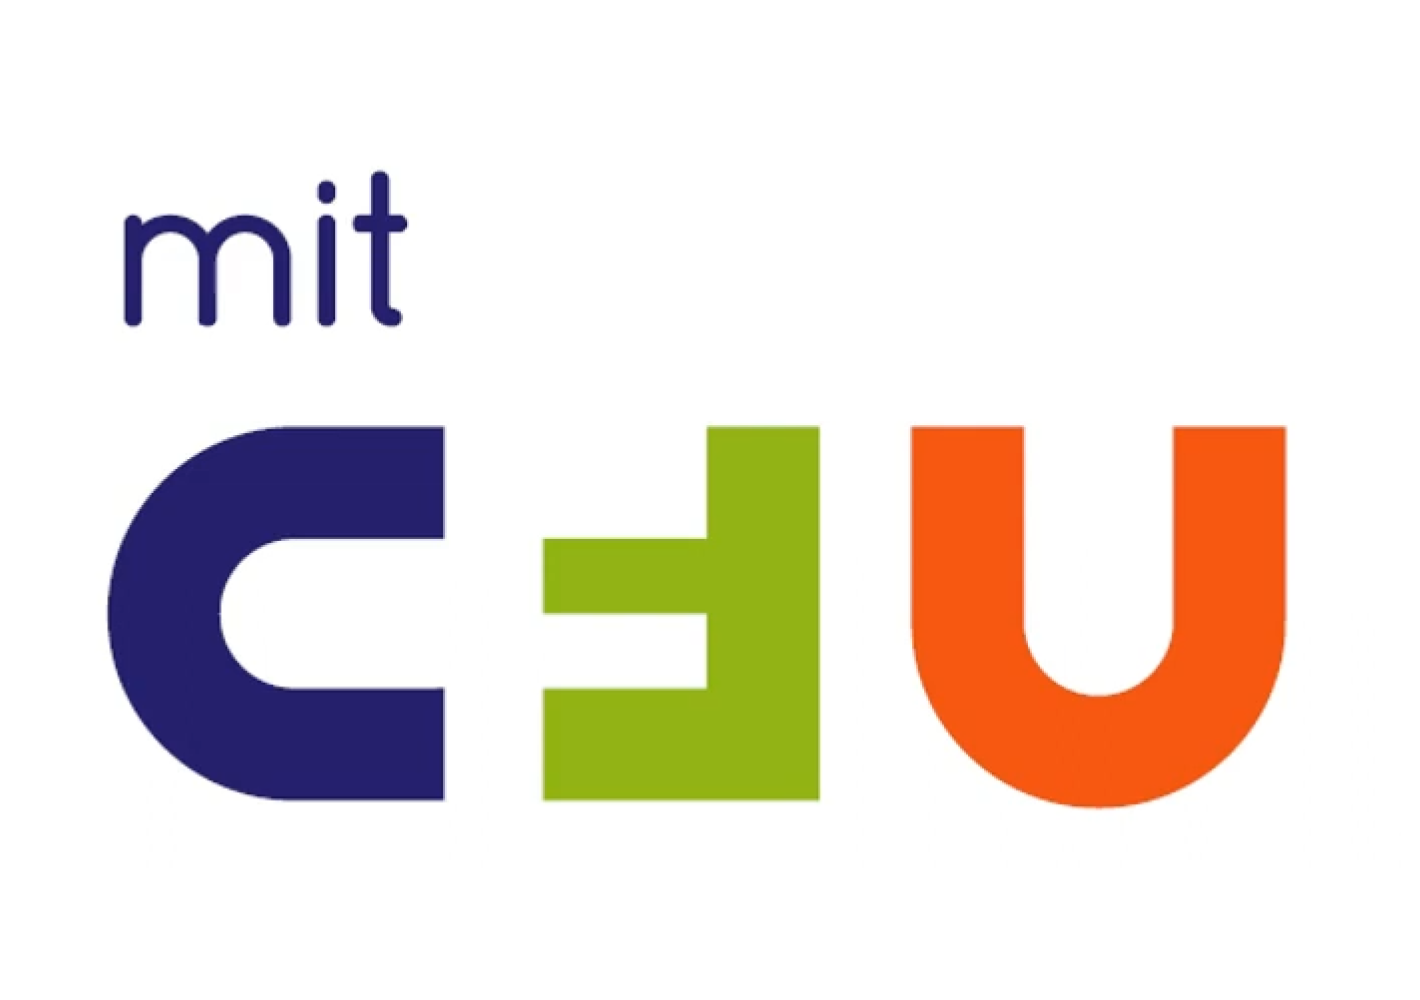 Mit CFU logo